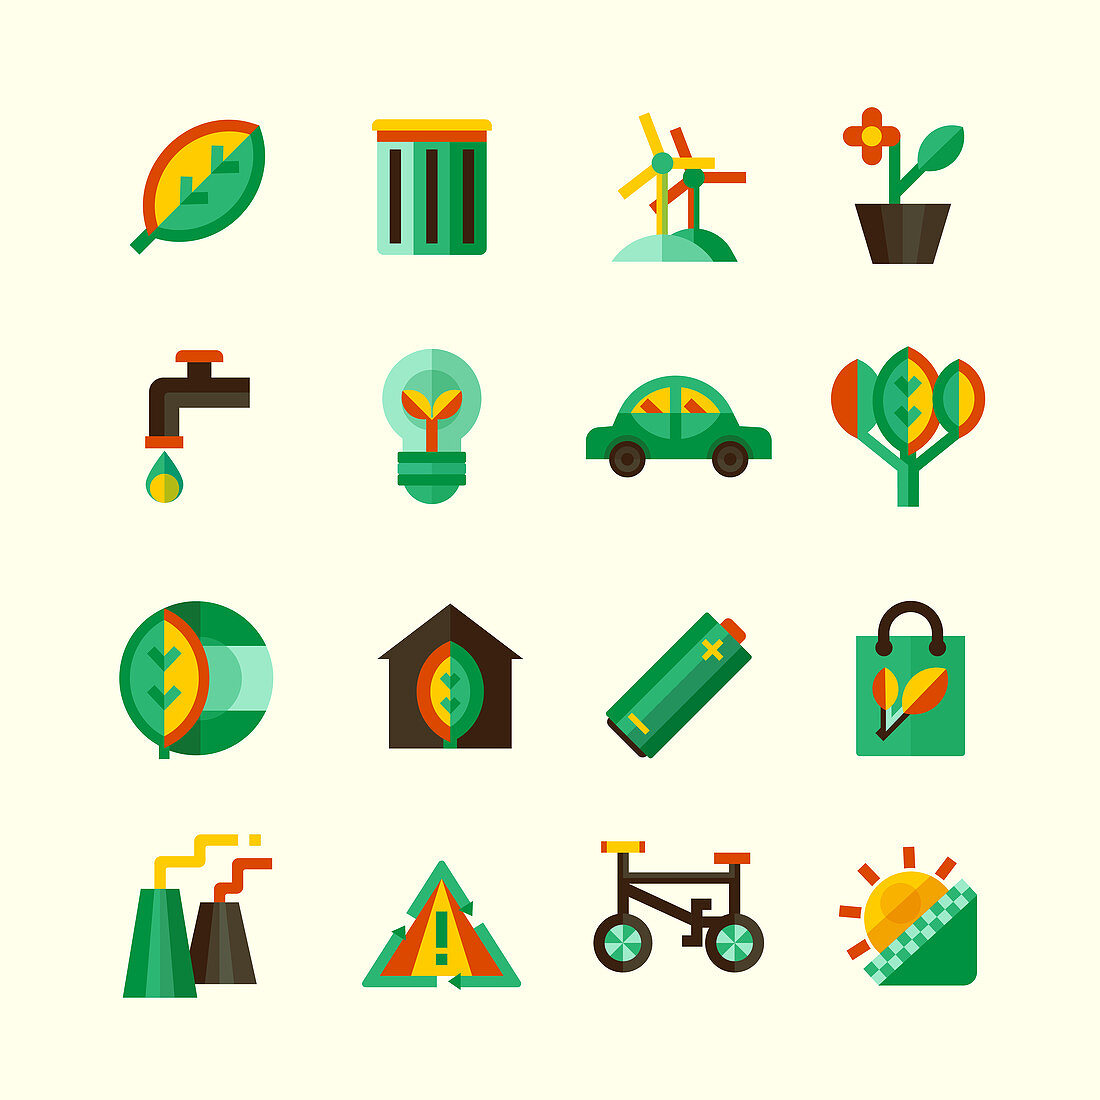 Ecology icons, illustration